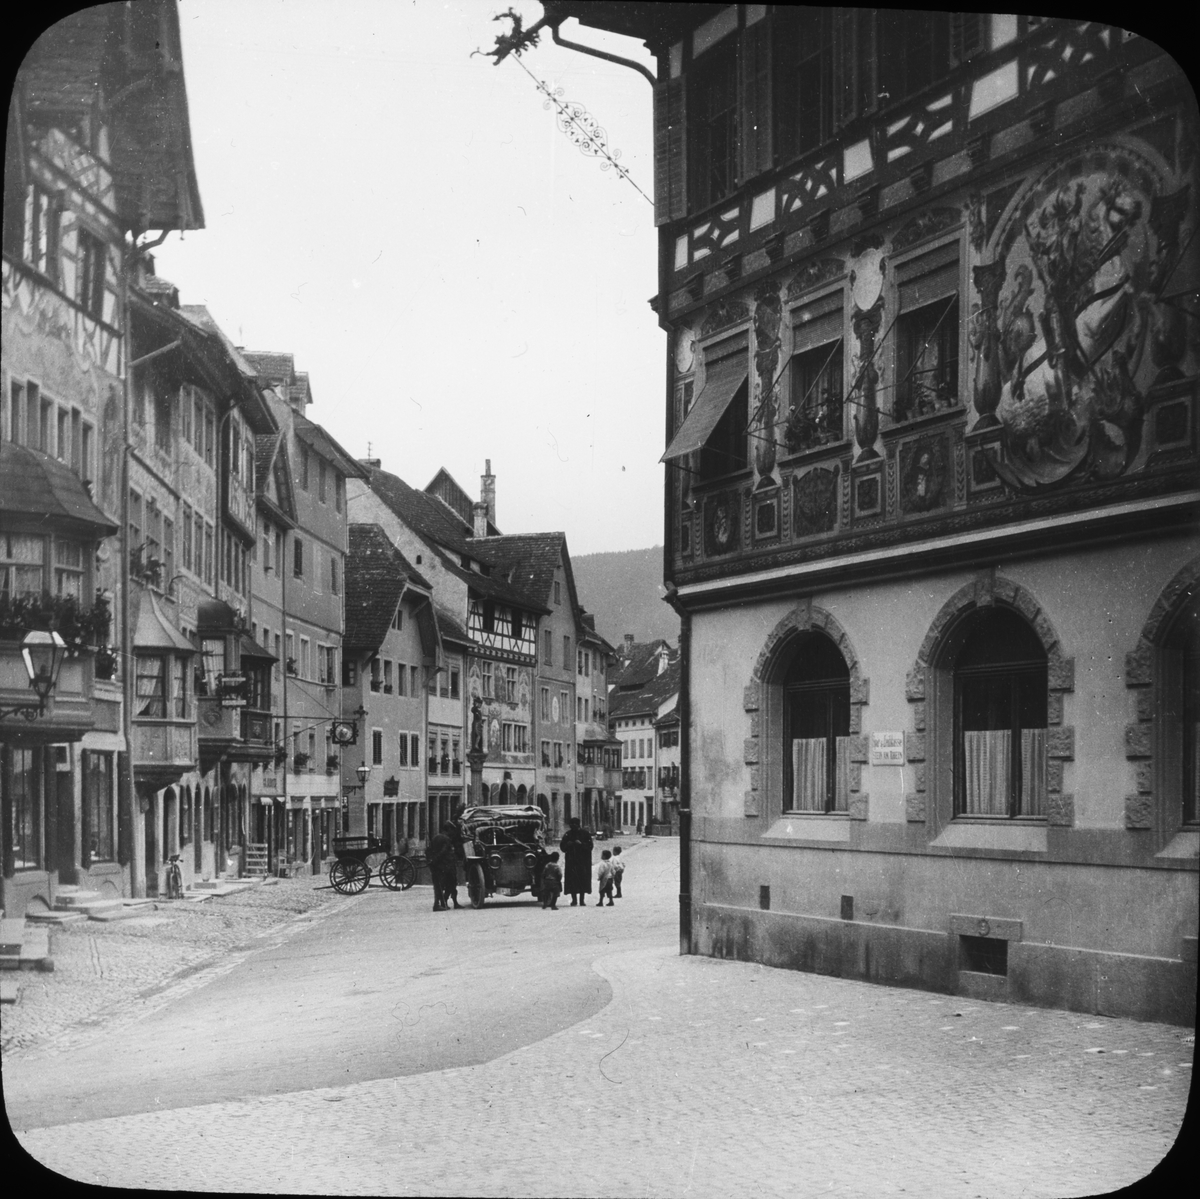 Skioptikonbild med motiv av automobil på Rathausplatz i Stein am Rhen.

Bilden har förvarats i kartong märkt: Resan 1908. Stein am Rhen 8. XIII